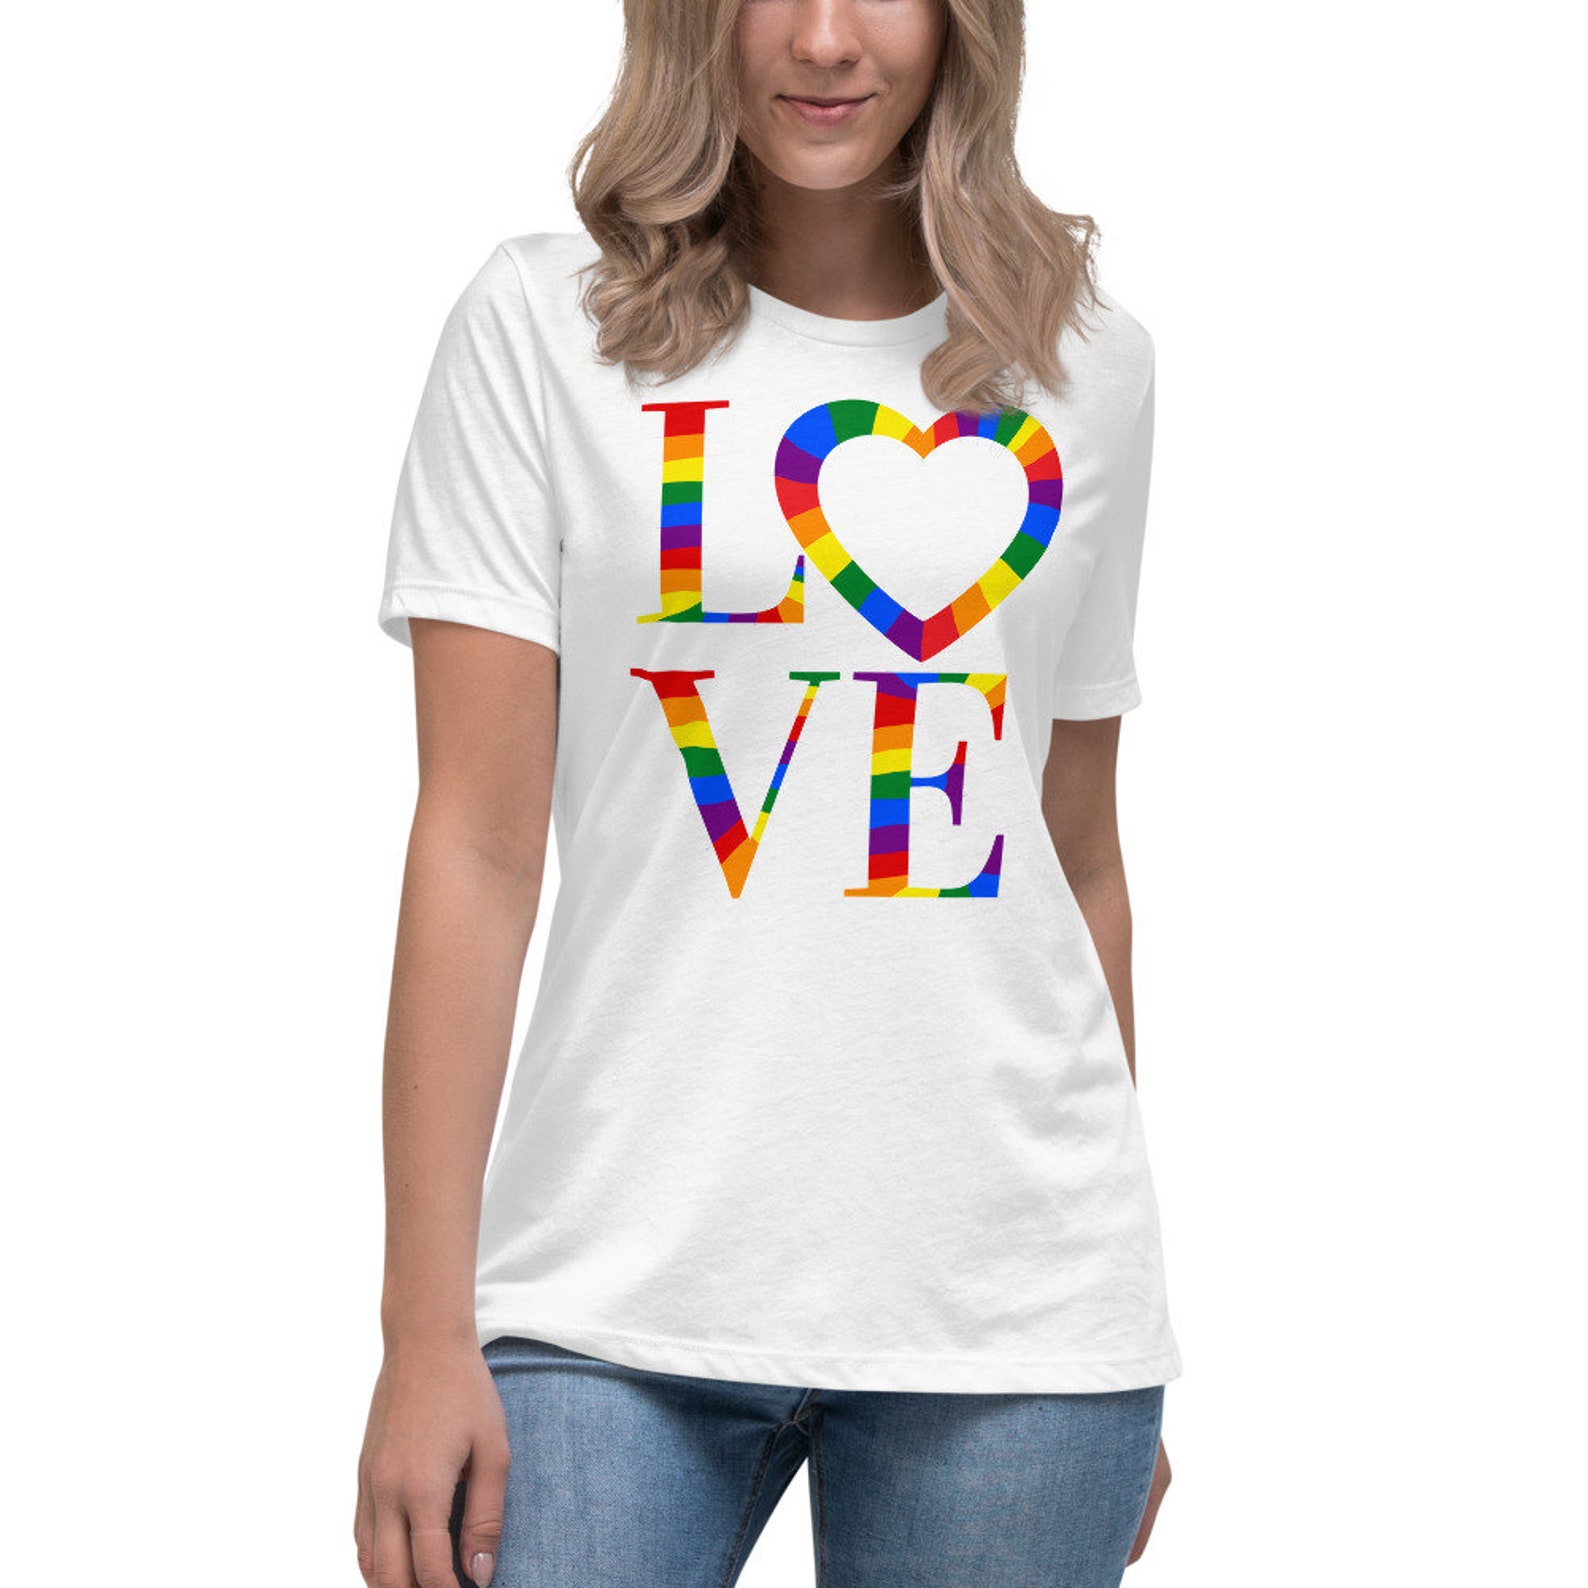 Lgbtq shirt lgbt shirt lgbtqia shirt lesbian tshirt pride | Etsy